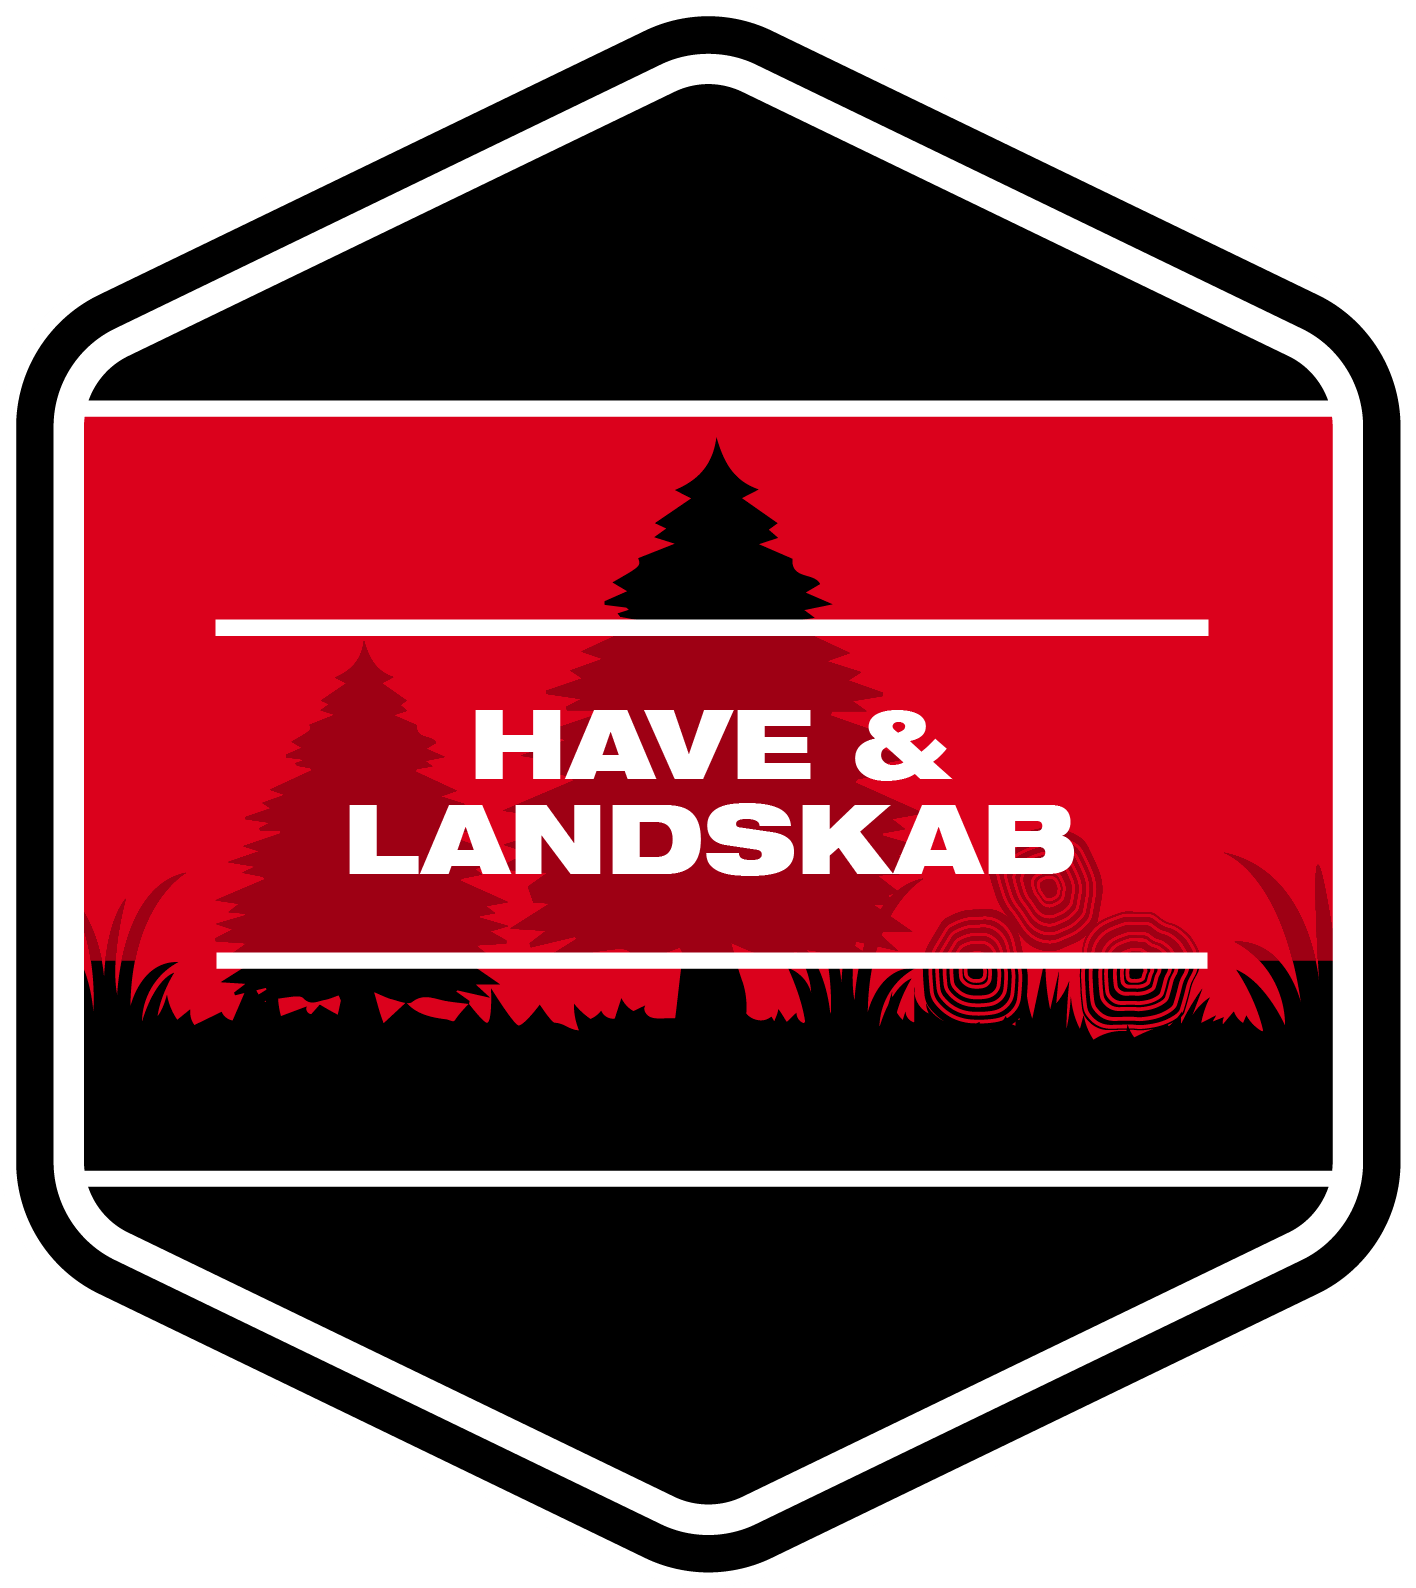 Have & Landskab